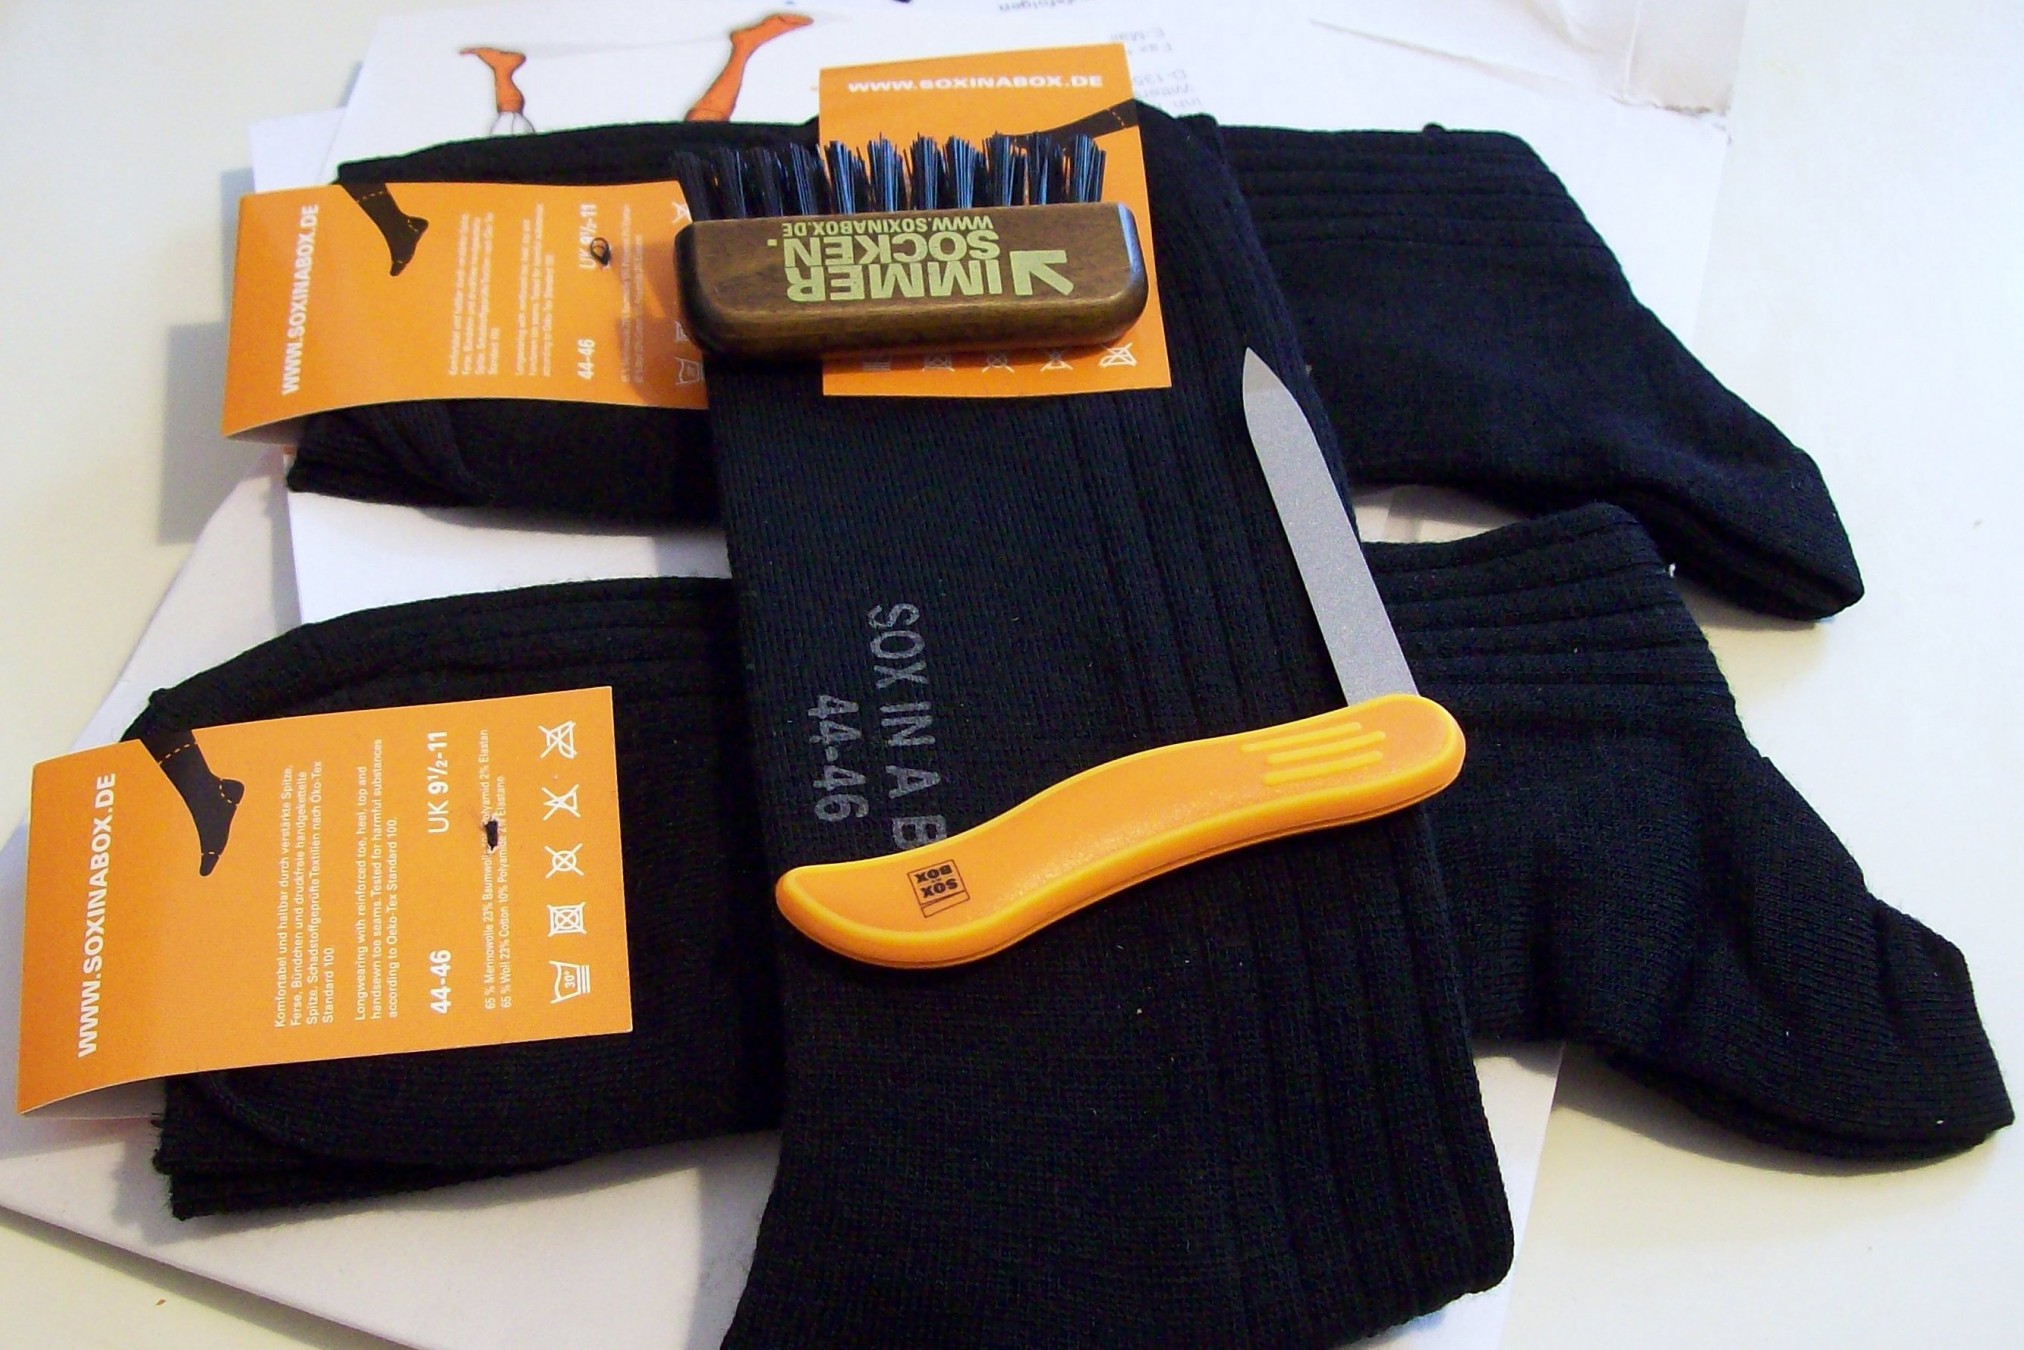 Unboxing: den Socken lagen noch kleine Geschenke bei - eine Nagelfeile, ein Kamm- und Bürstenreiniger.